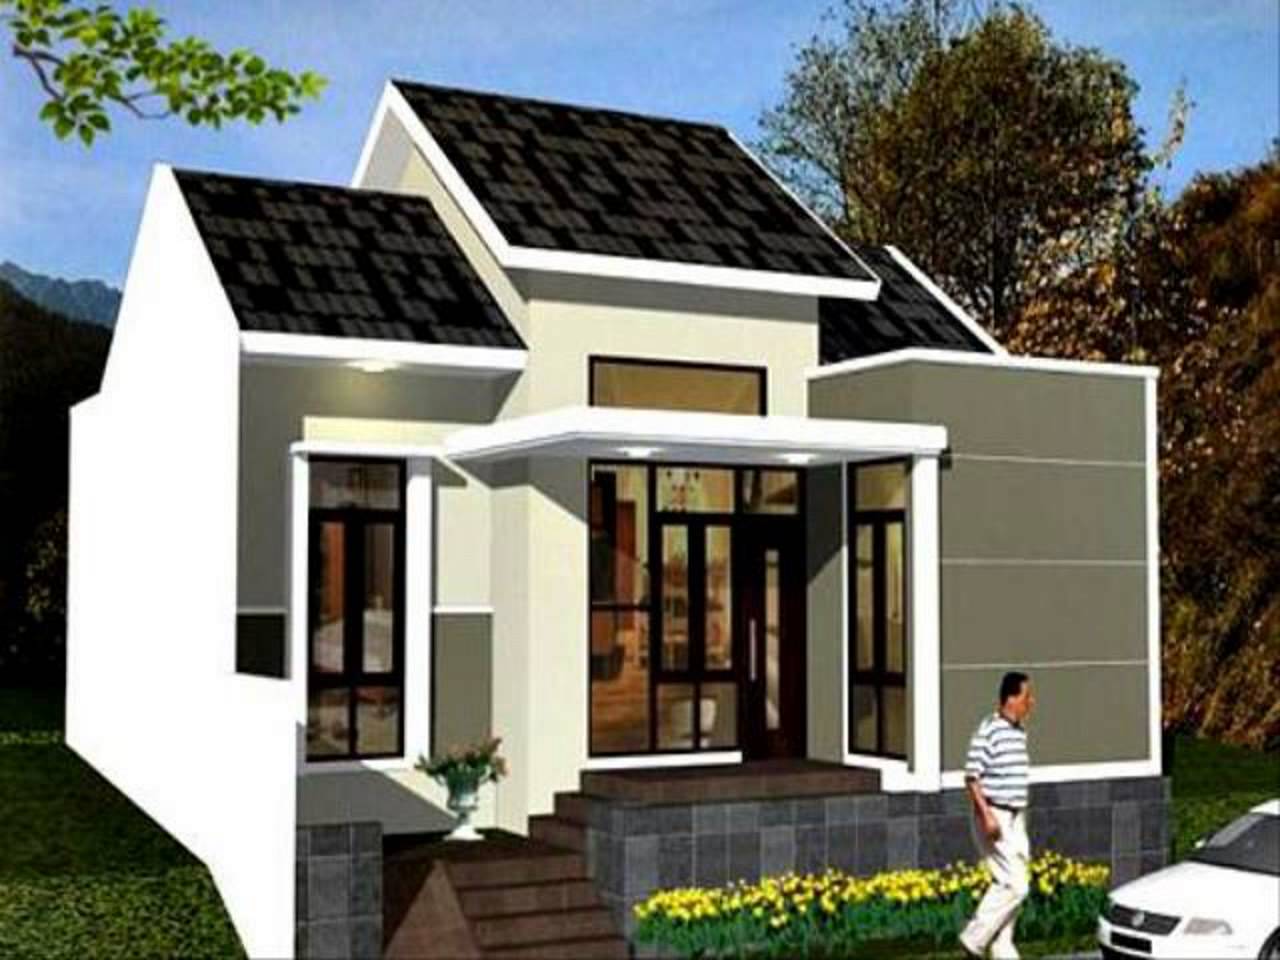 Indah 21 Gambar Rumah Mewah Indonesia 20 Dengan Tambahan Inspirasi Ide Desain Interior Rumah oleh 21 Gambar Rumah Mewah Indonesia